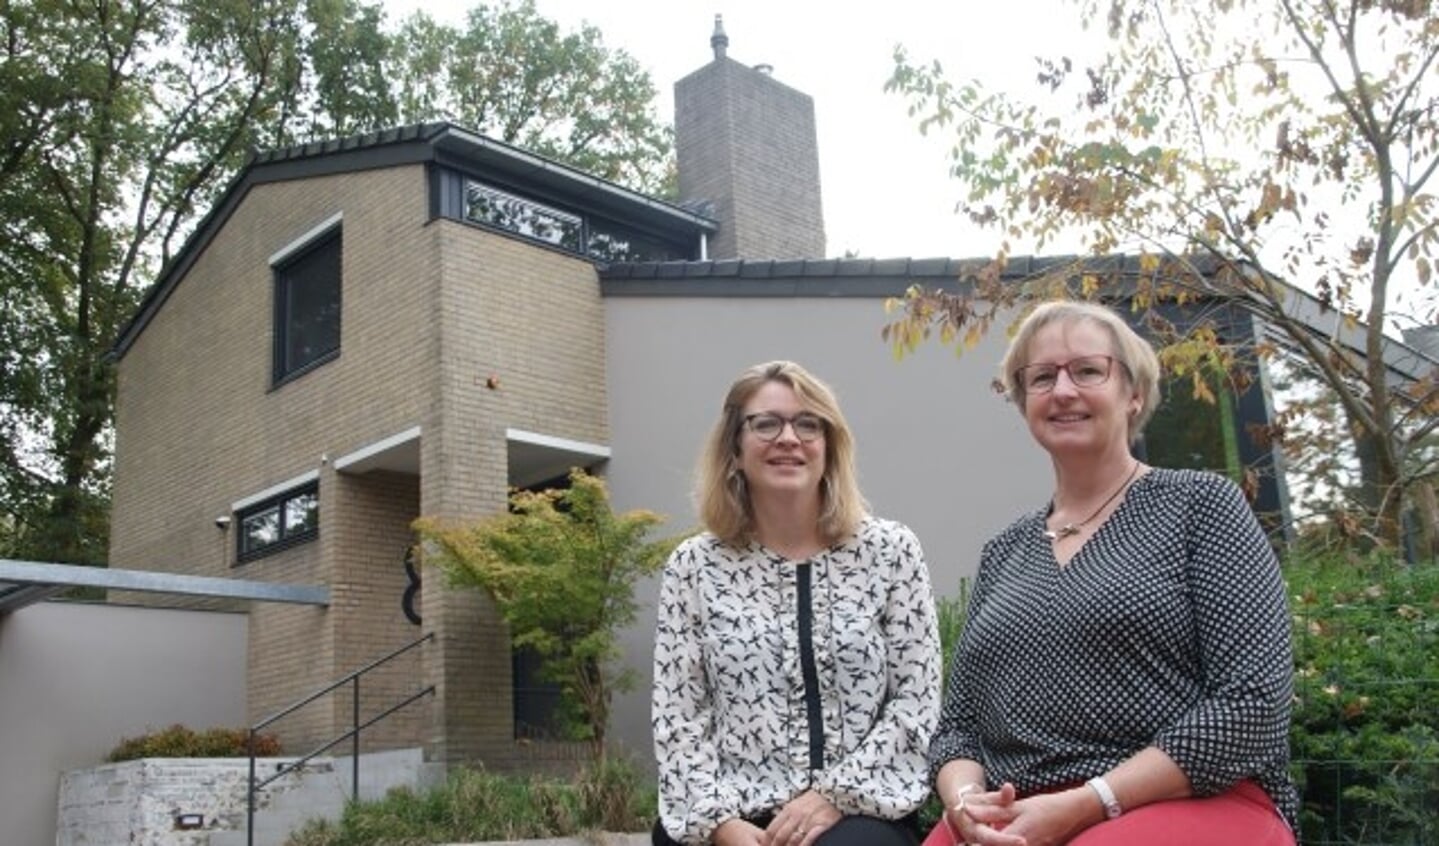 Wethouder Anne Janssen (links) is blij dat Nora van den Broek haar huis openstelt tijdens de Duurzame Huizenroute. 